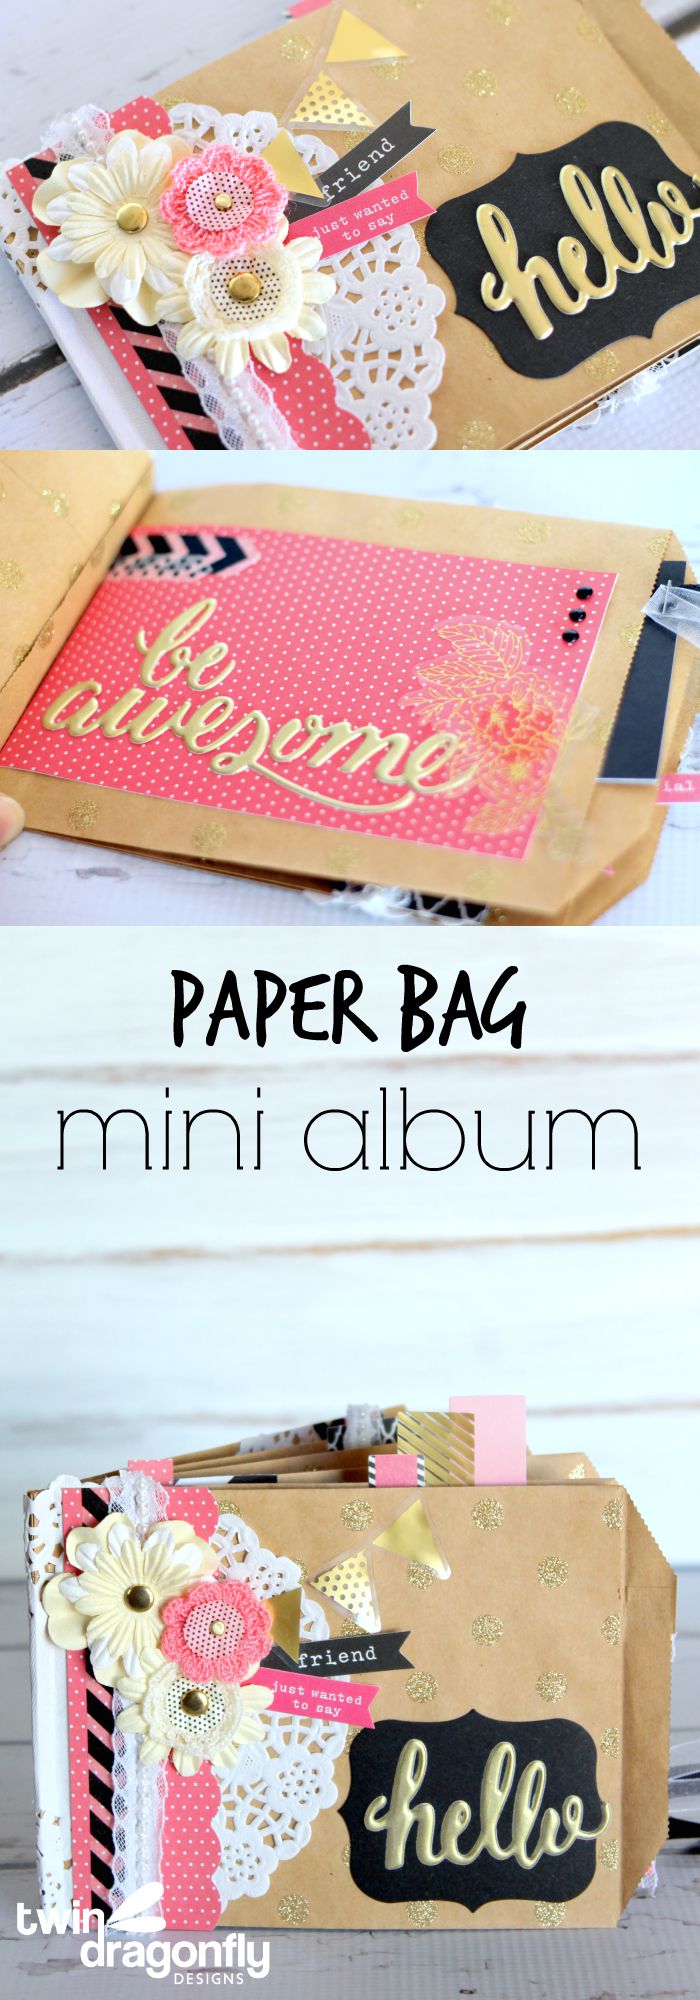 Paper Bag Mini Album Long Collage